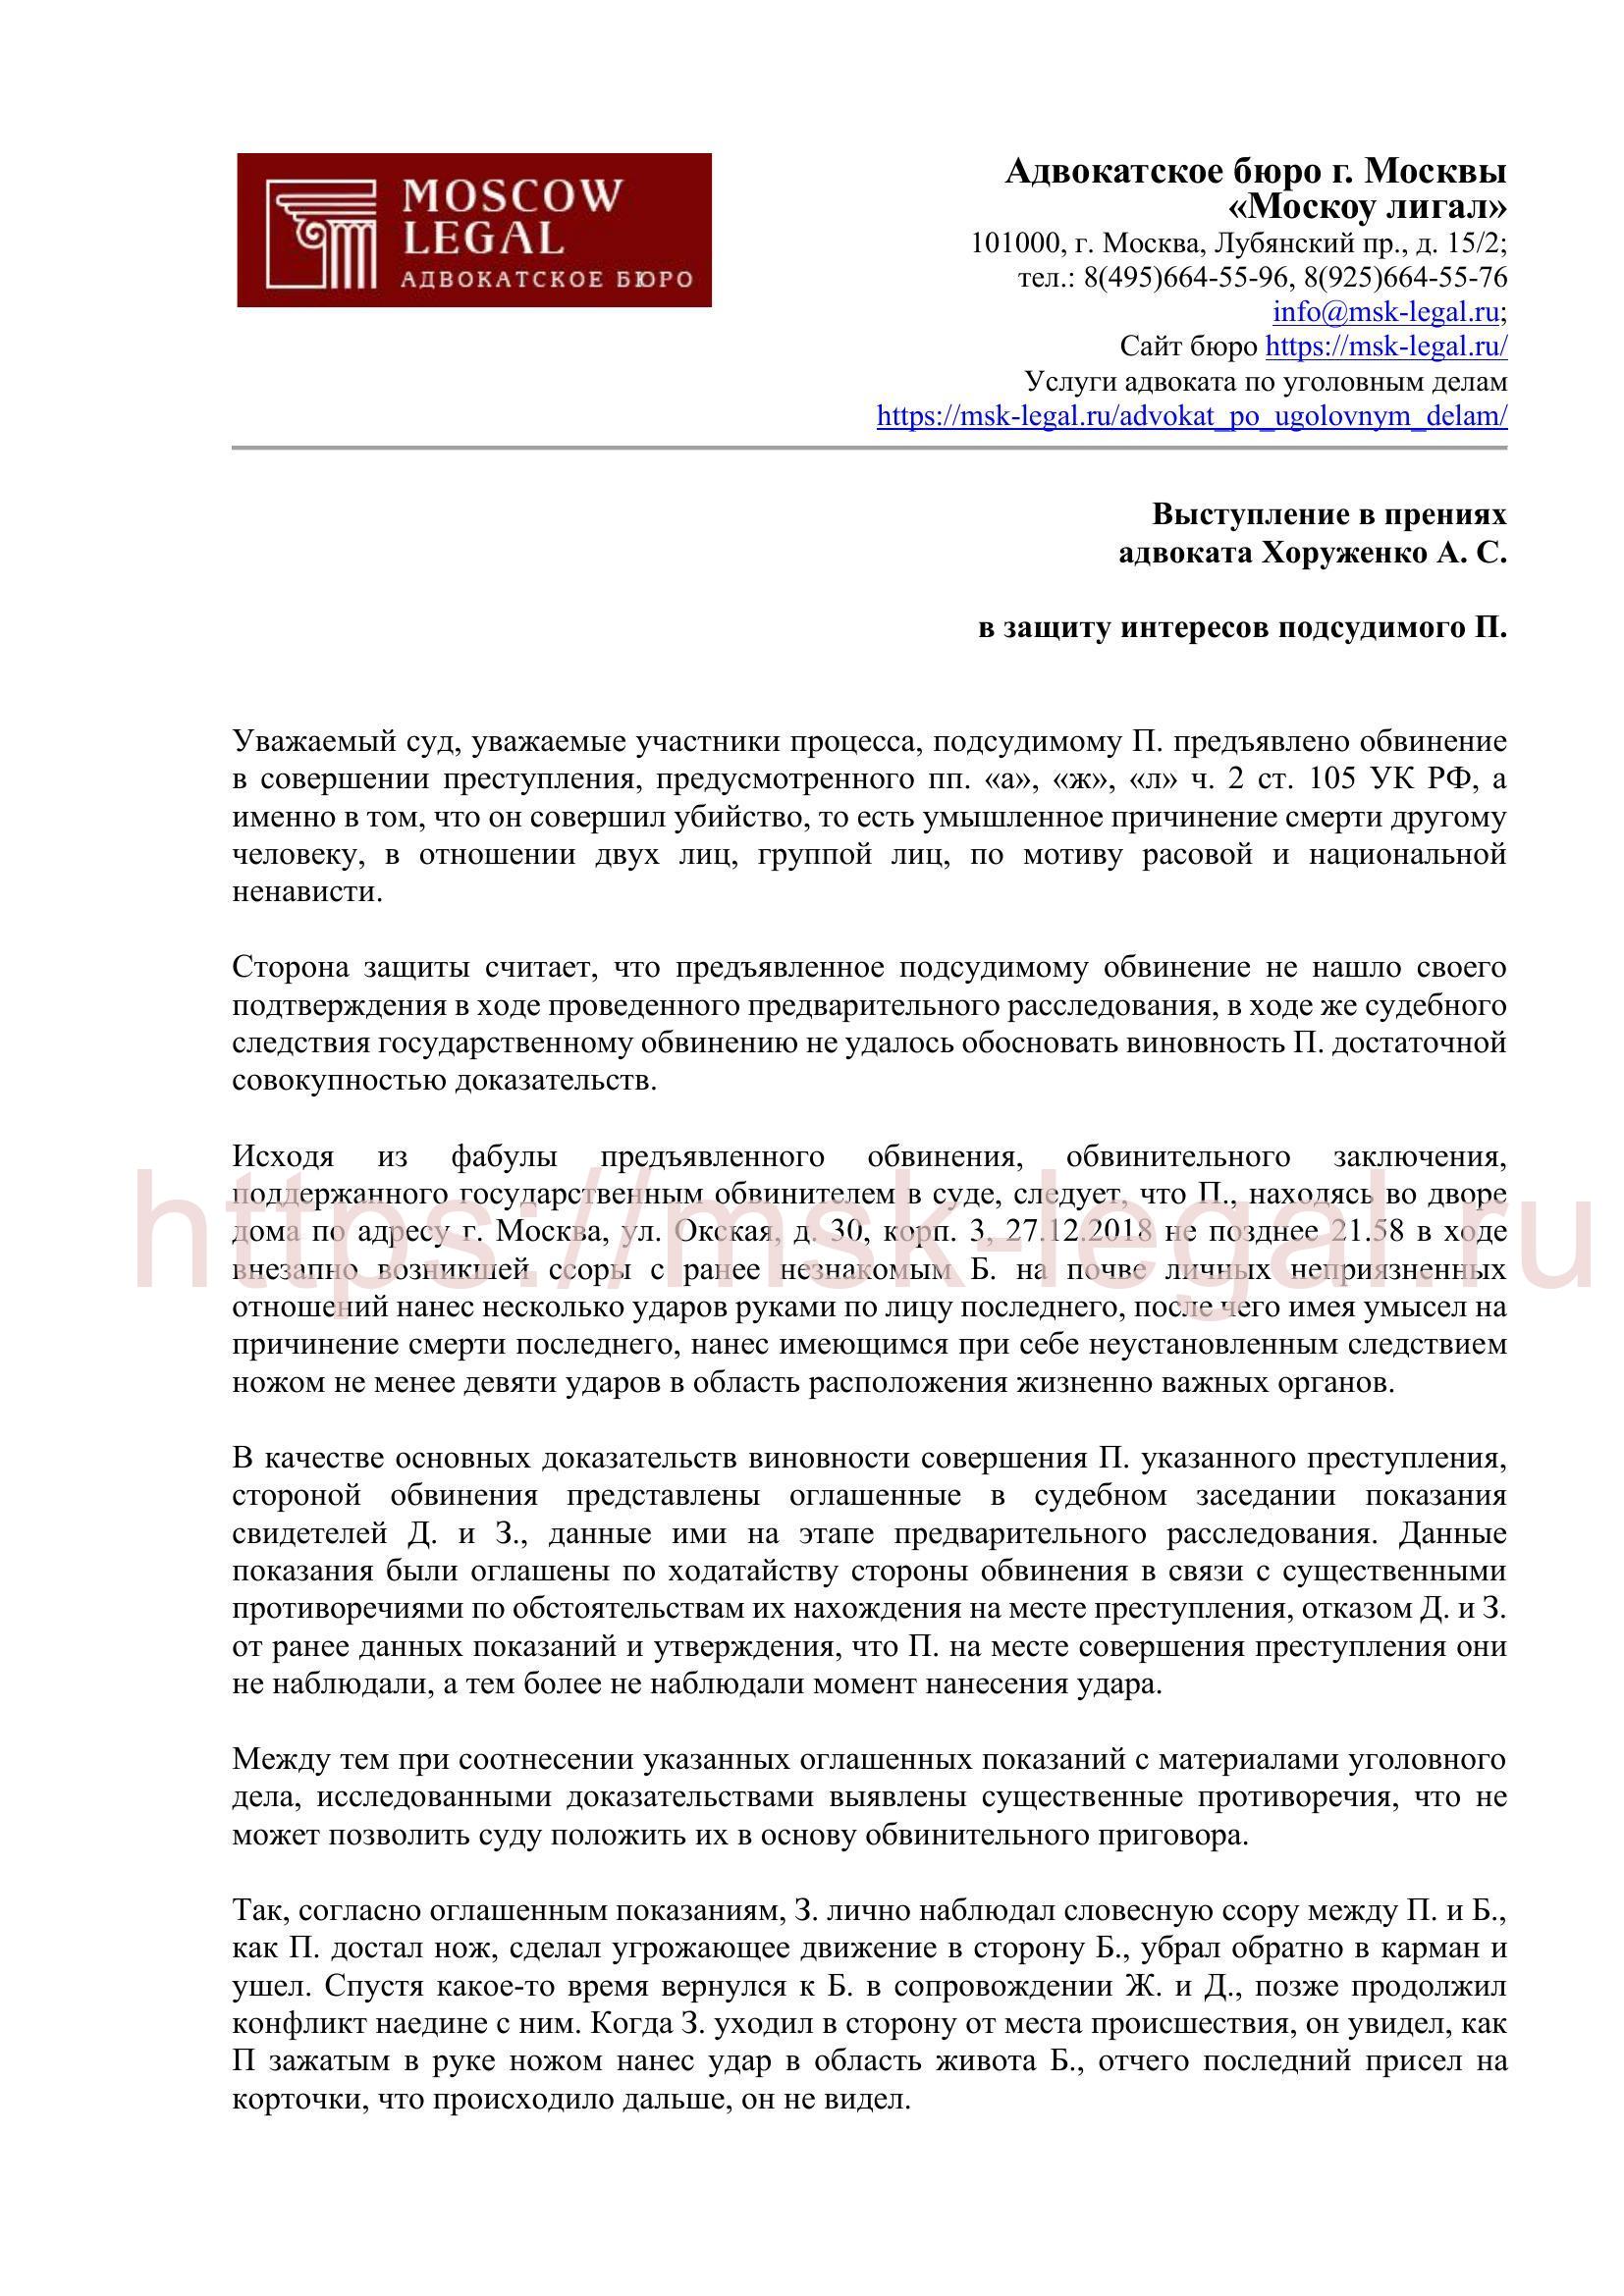 Тезисы к выступлению адвоката Хоруженко А. С. по уголовному делу об убийстве